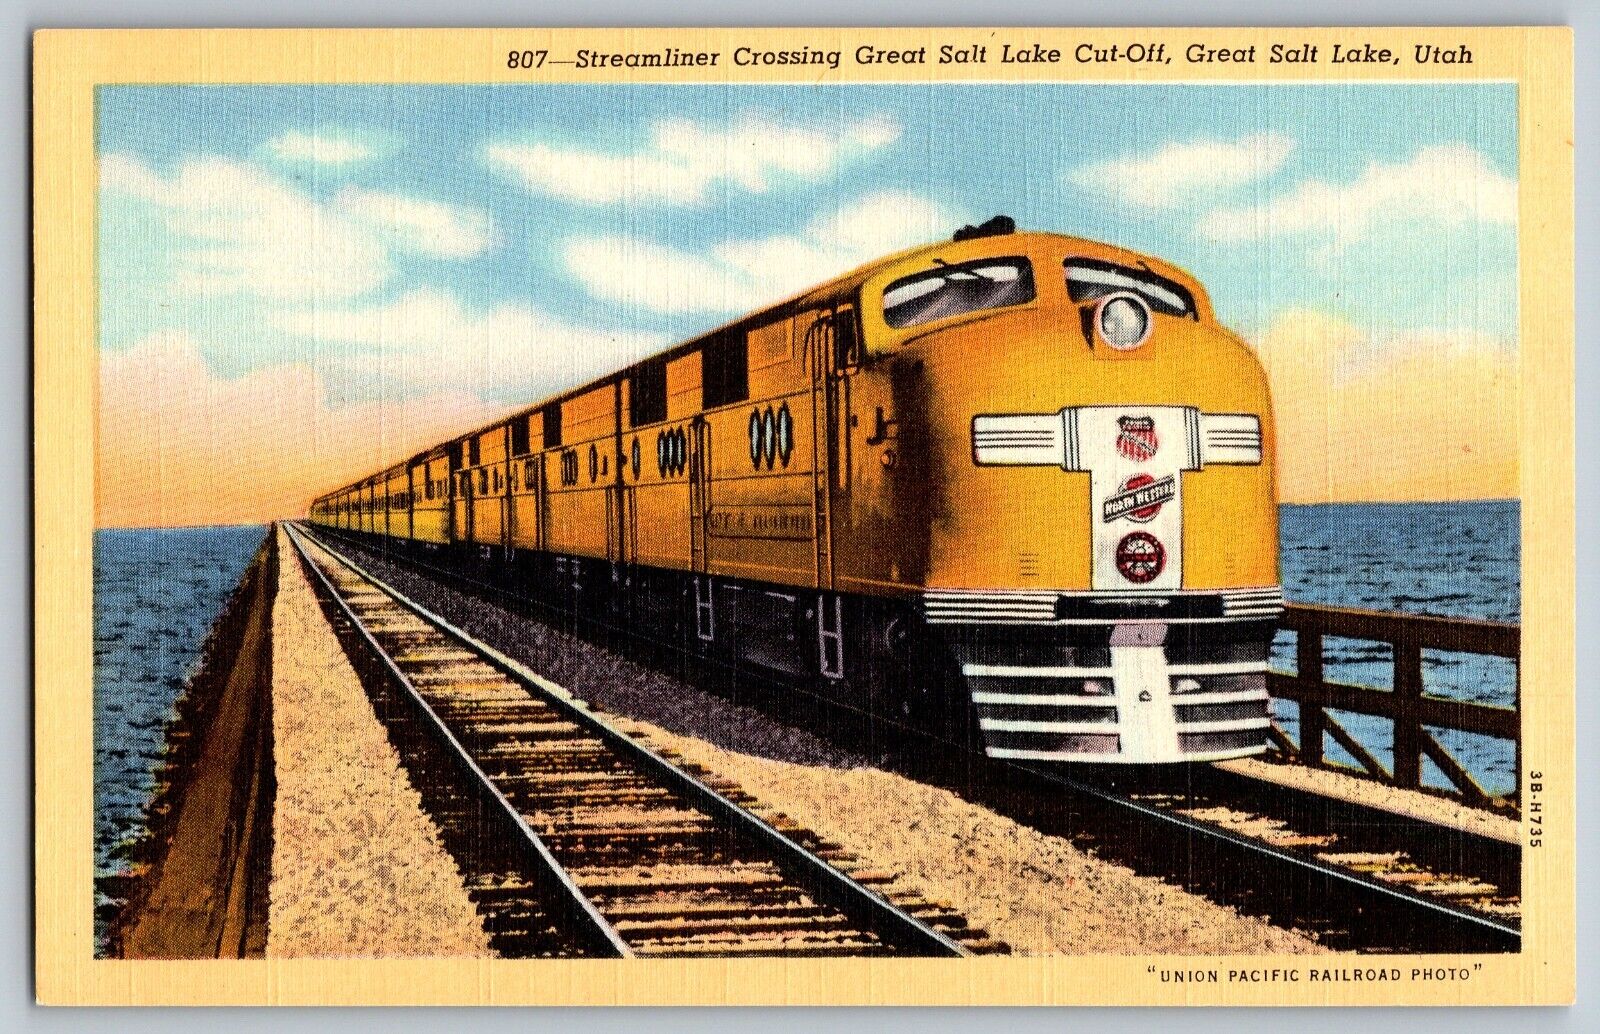 Great Salt Lake, Utah - Streamliner Crossing Great Salt Lake - Vintage Postcard